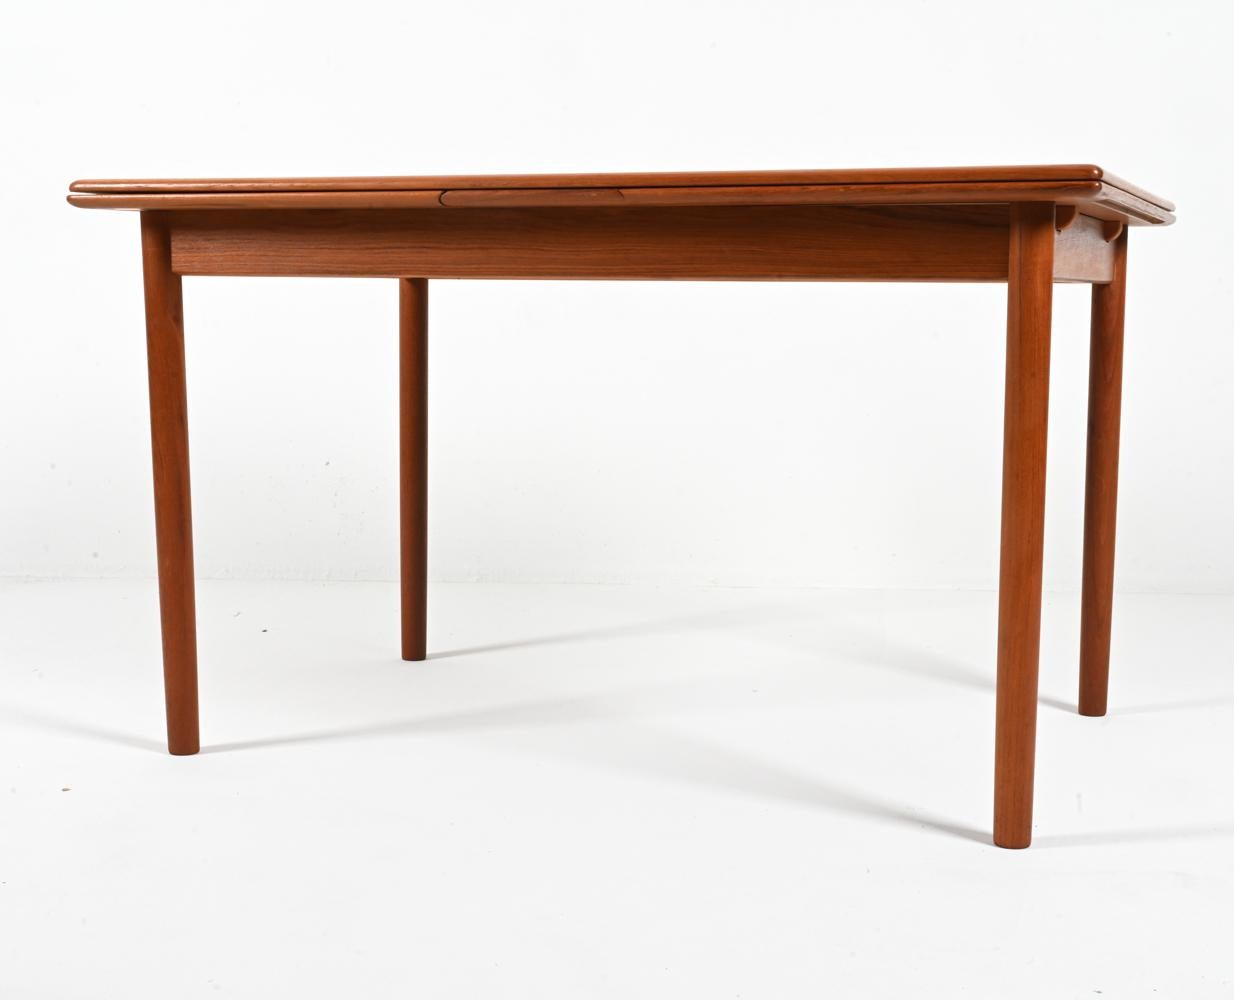 Voici une table de salle à manger danoise classique du milieu du siècle en parfait état, conçue par Niels Otto Møller pour J.L.A. Møllers Møbelfabrik et fabriqué en bois de teck lumineux. Cet exemple présente une silhouette rectangulaire avec de